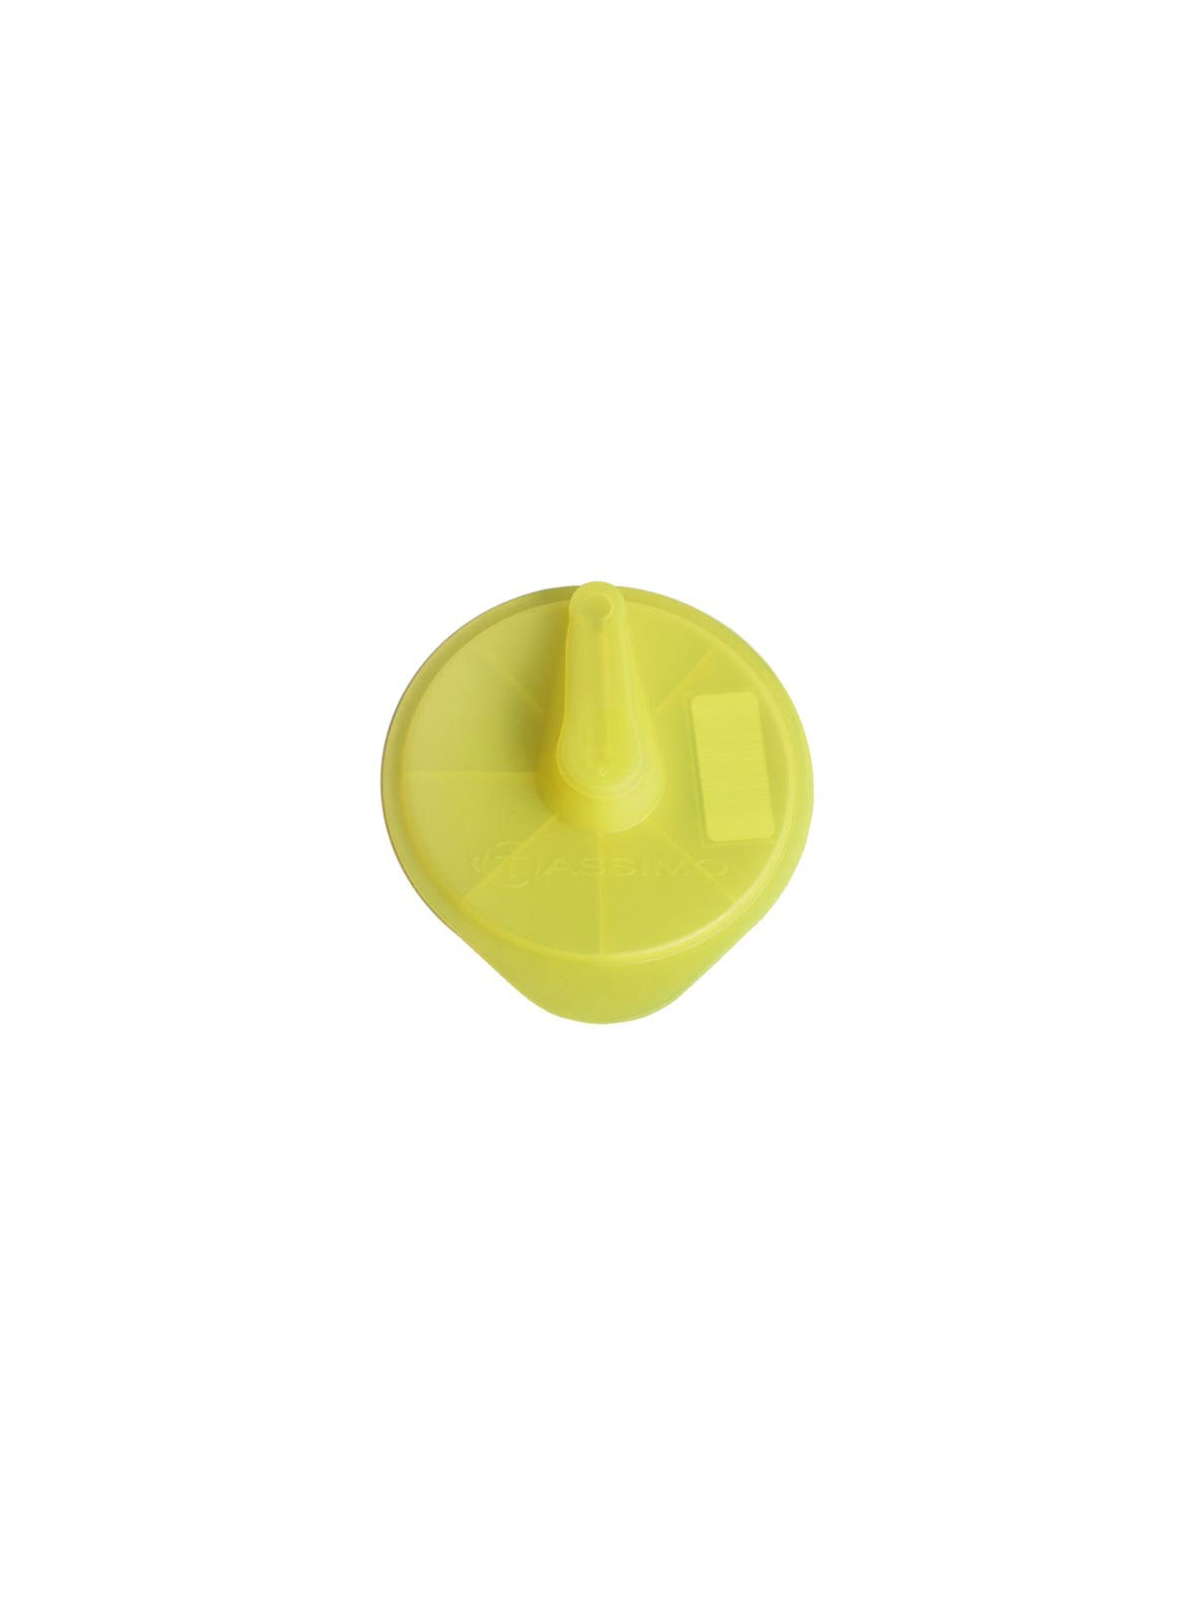 T-disc de service jaune Bosch Tassimo - Cafetière